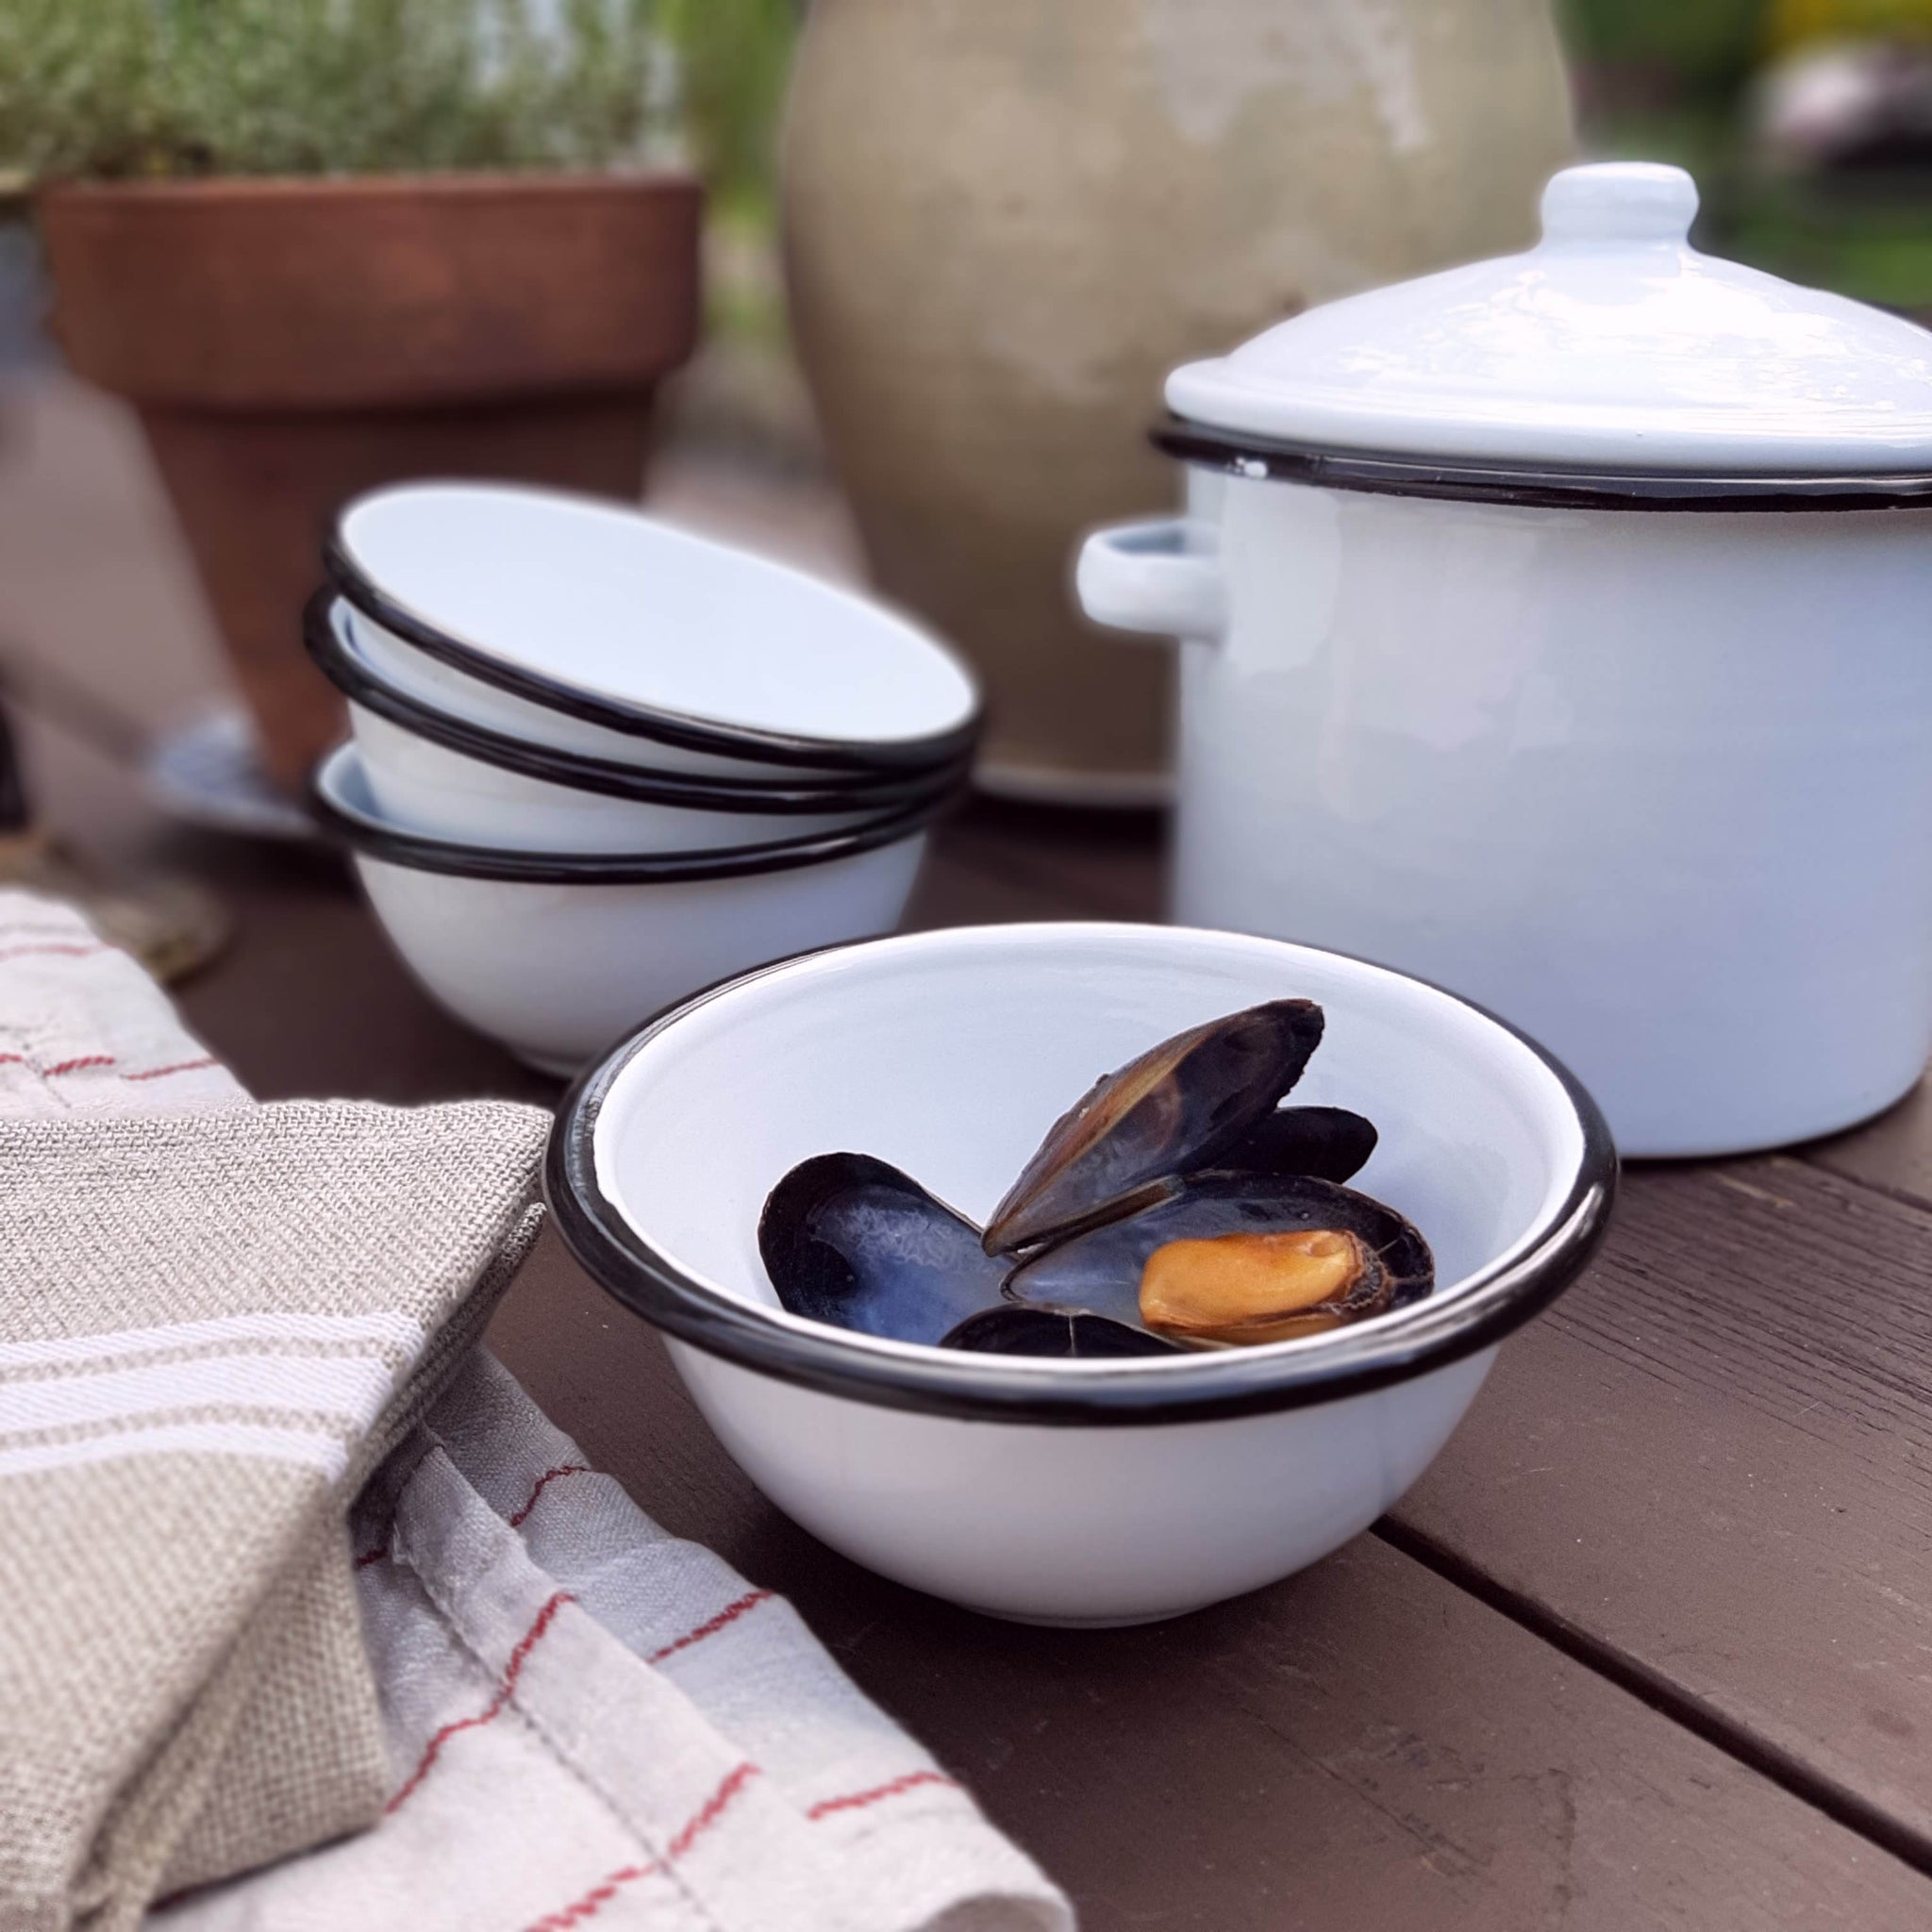 White Enamel Bowls with Black Rims - Farmhouse Wares